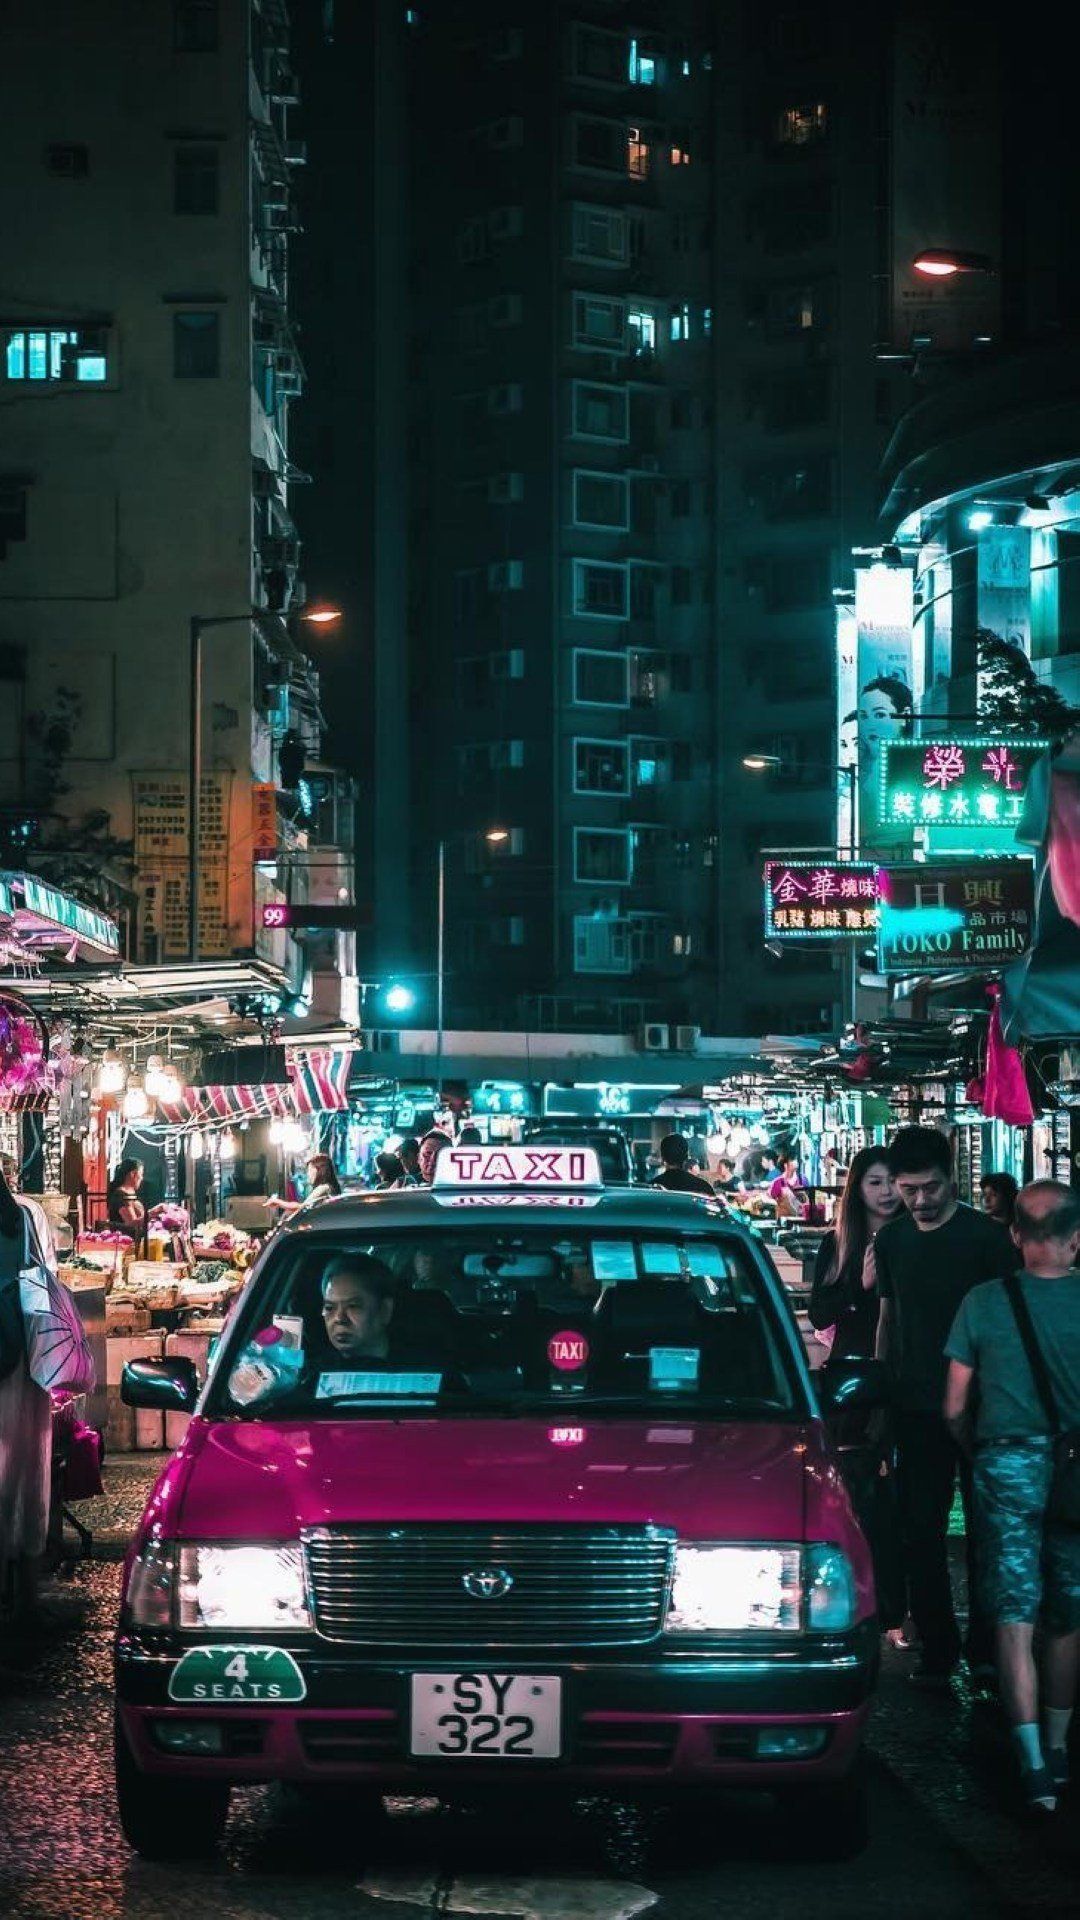 Hong Kong Night Wallpapers